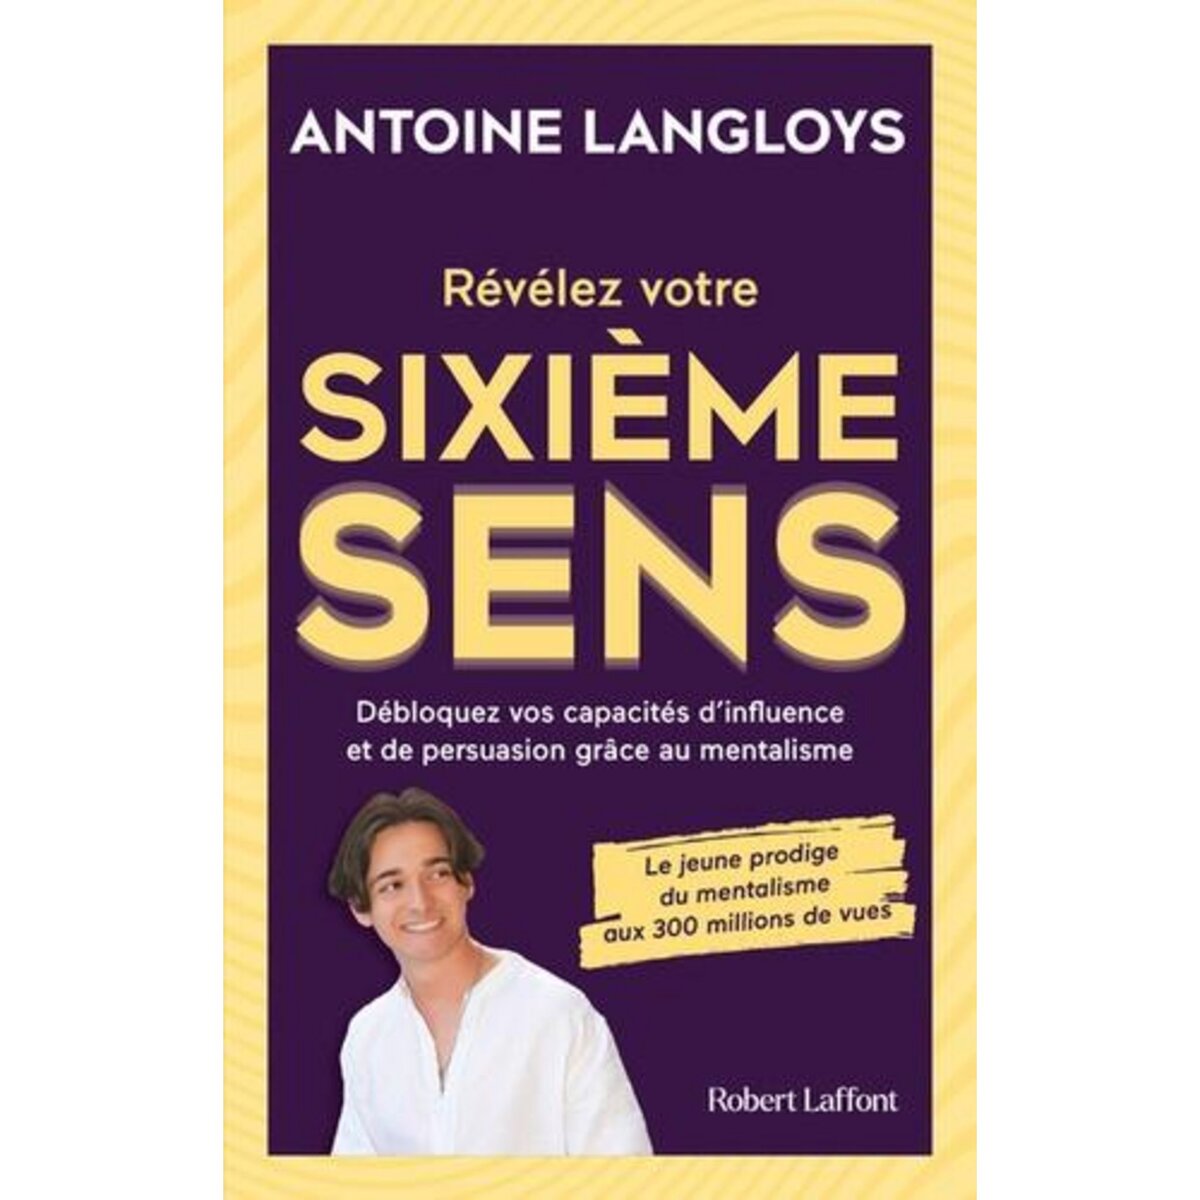  REVELEZ VOTRE SIXIEME SENS. DEBLOQUEZ VOS CAPACITES D'INFLUENCE ET DE PERSUASION GRACE AU MENTALISME, Langloys Antoine